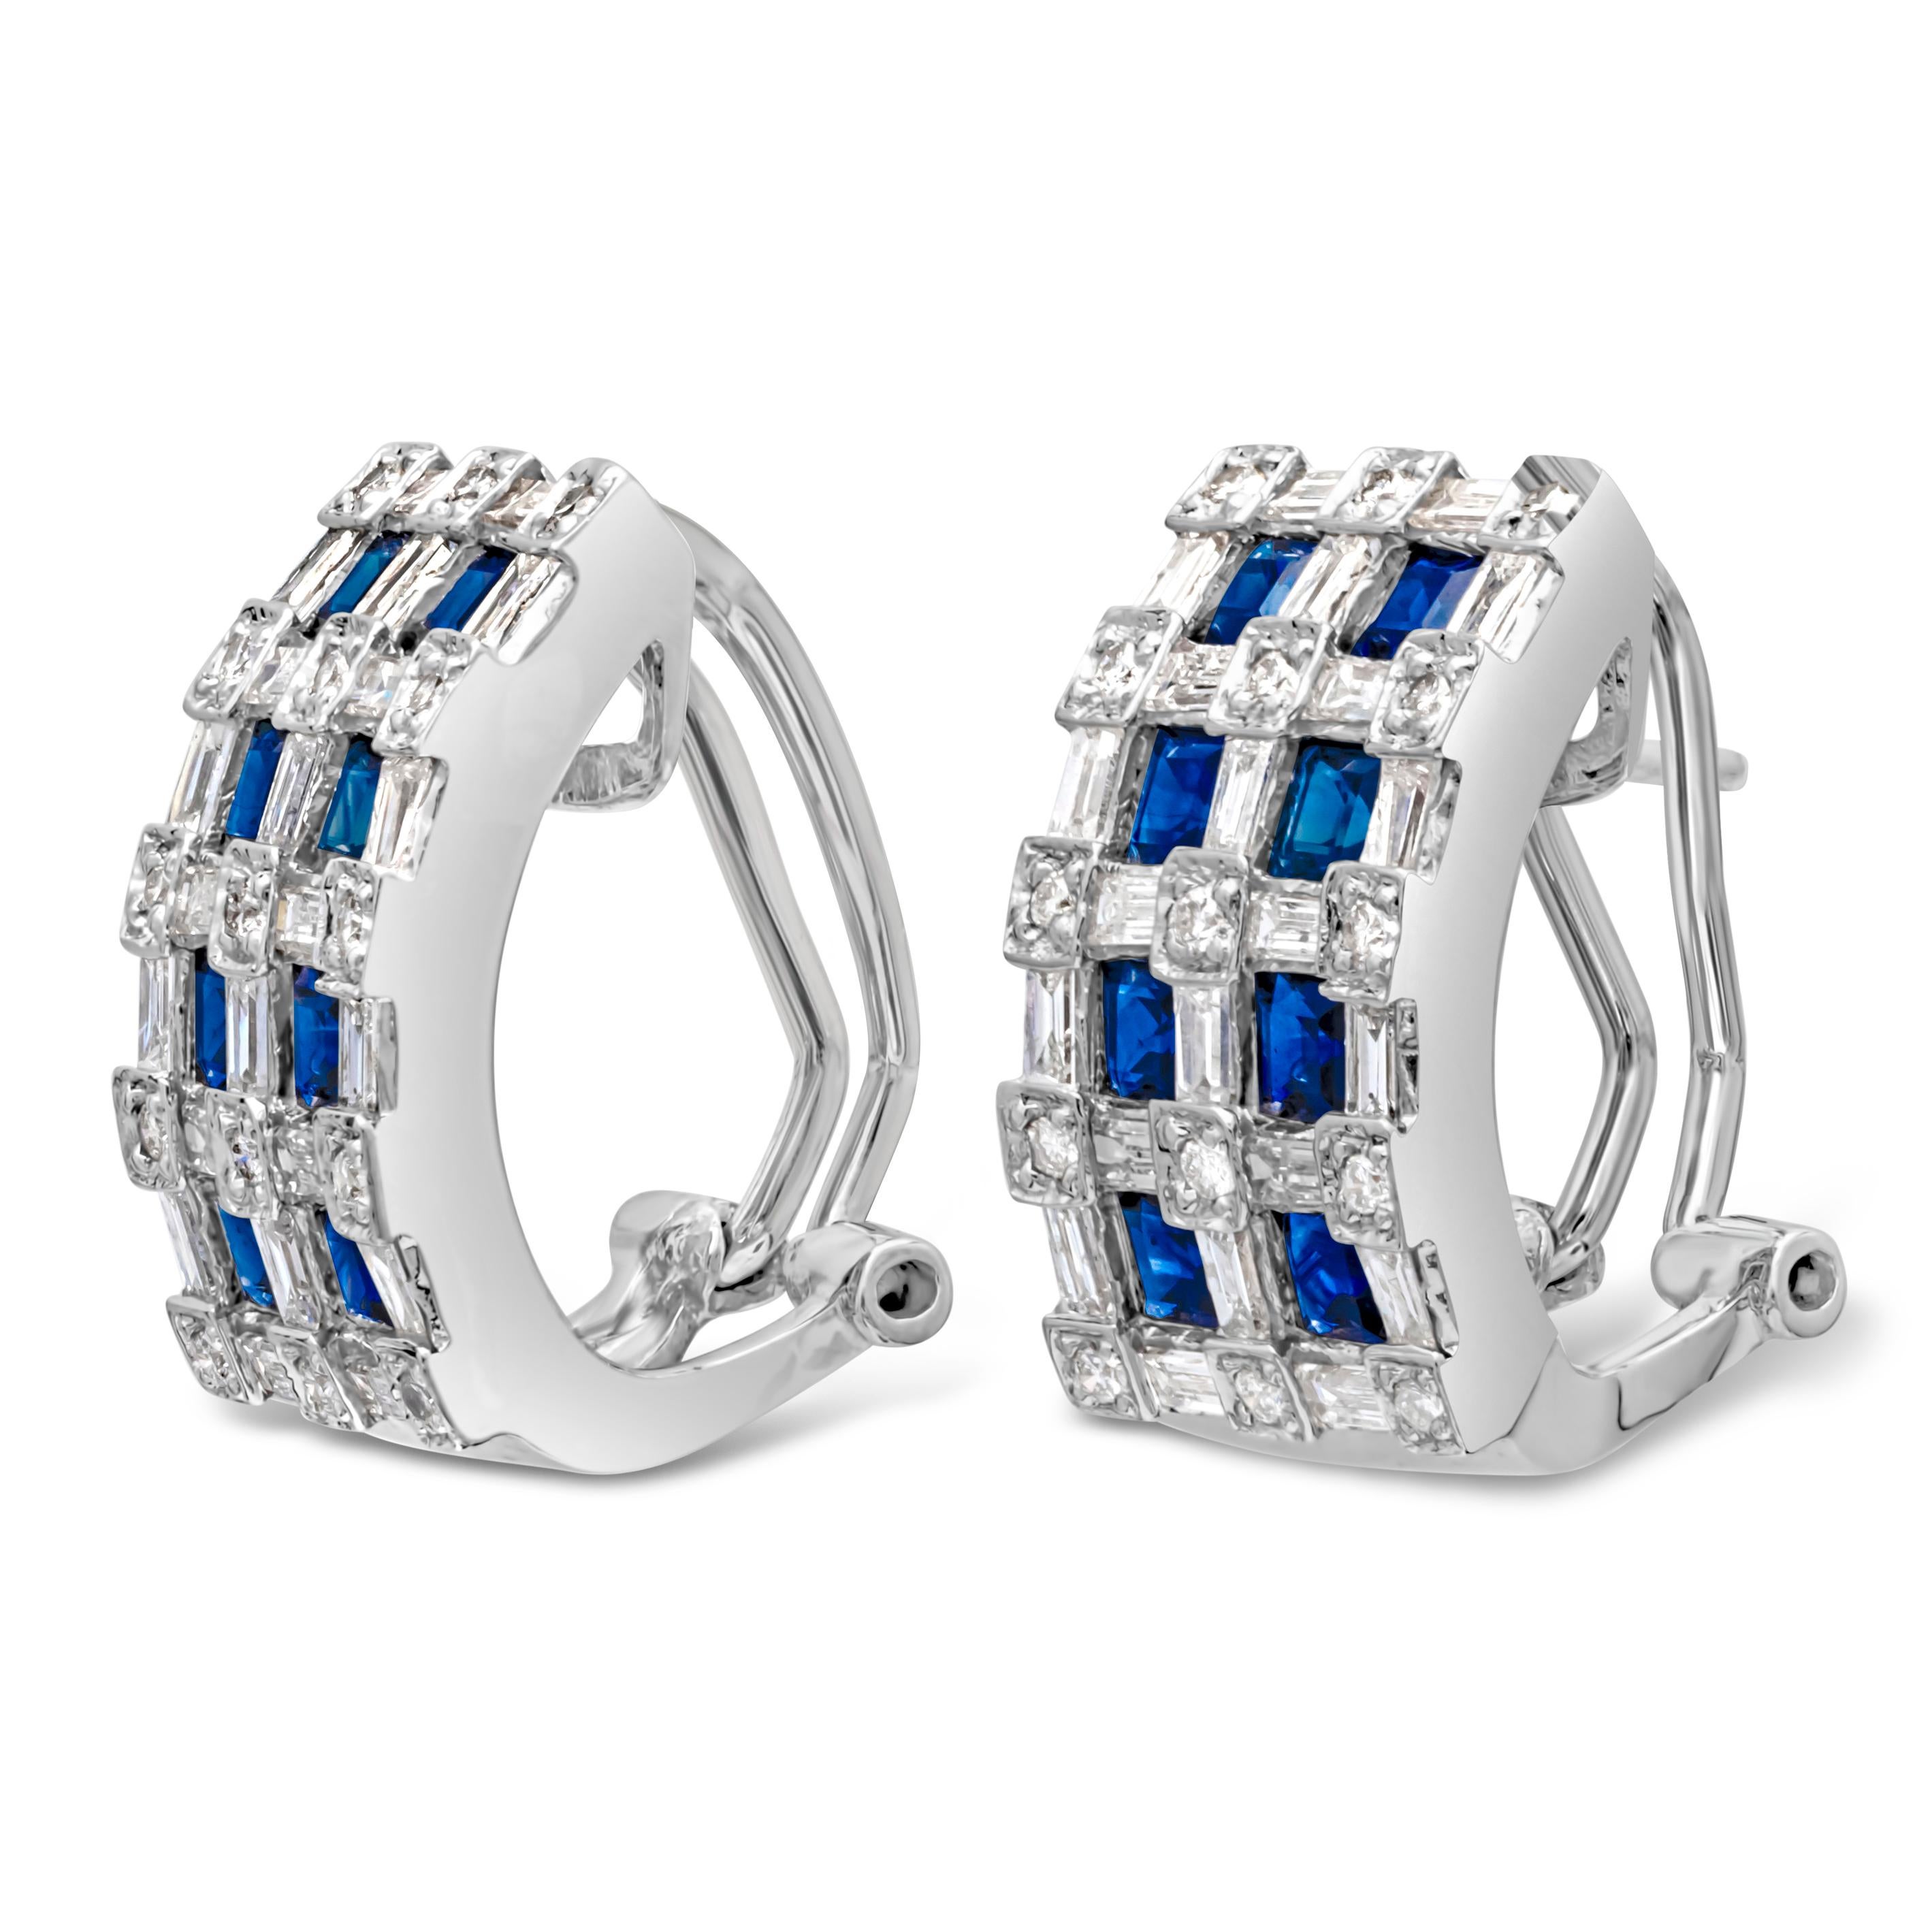 Ein modischer und attraktiver Ohrring mit zwei Reihen von 16 blauen Saphiren im Asscher-Schliff mit einem Gesamtgewicht von 2,40 Karat, verziert mit 74 Diamanten im Brillant-Mischschliff mit einem Gesamtgewicht von 1,50 Karat, Farbe G und Reinheit